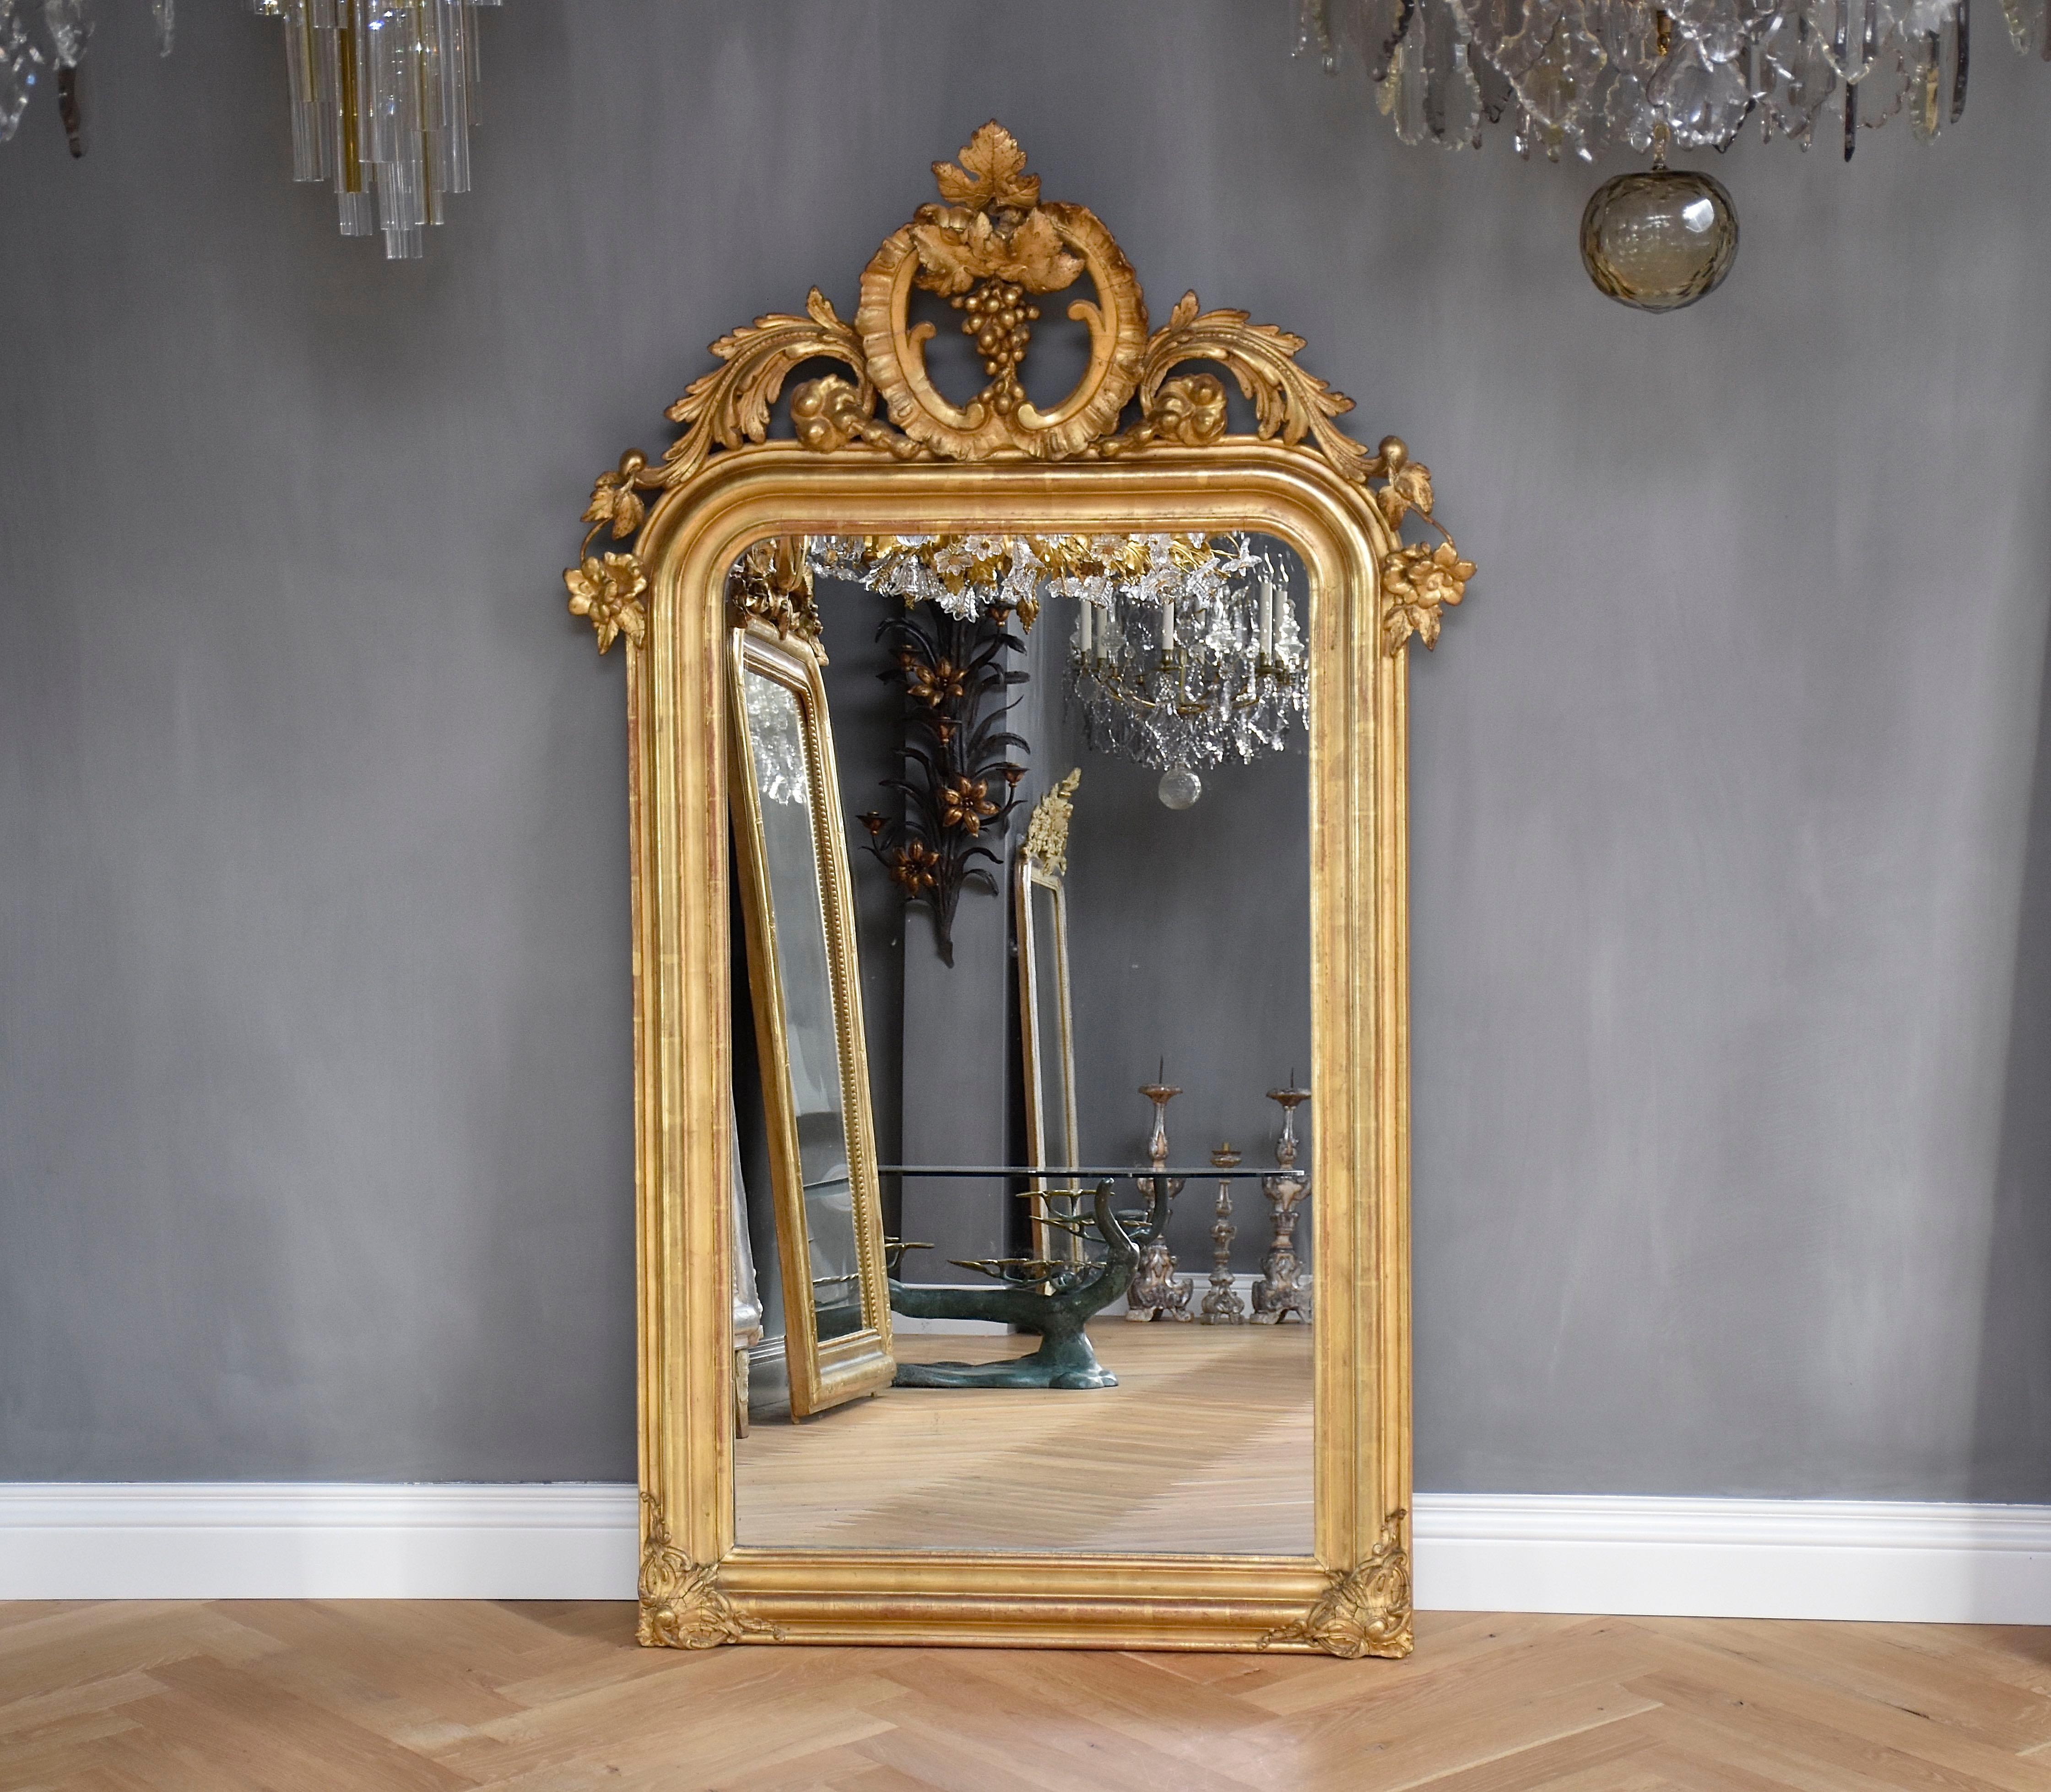 Magnifique miroir français doré du 19e siècle, avec son verre antique d'origine légèrement rongé par la rouille et une belle couronne.
La couronne est ornée de fleurs, de feuilles, de C.I.C. et de grappes de raisin.
Les coins sont ornés de jolies